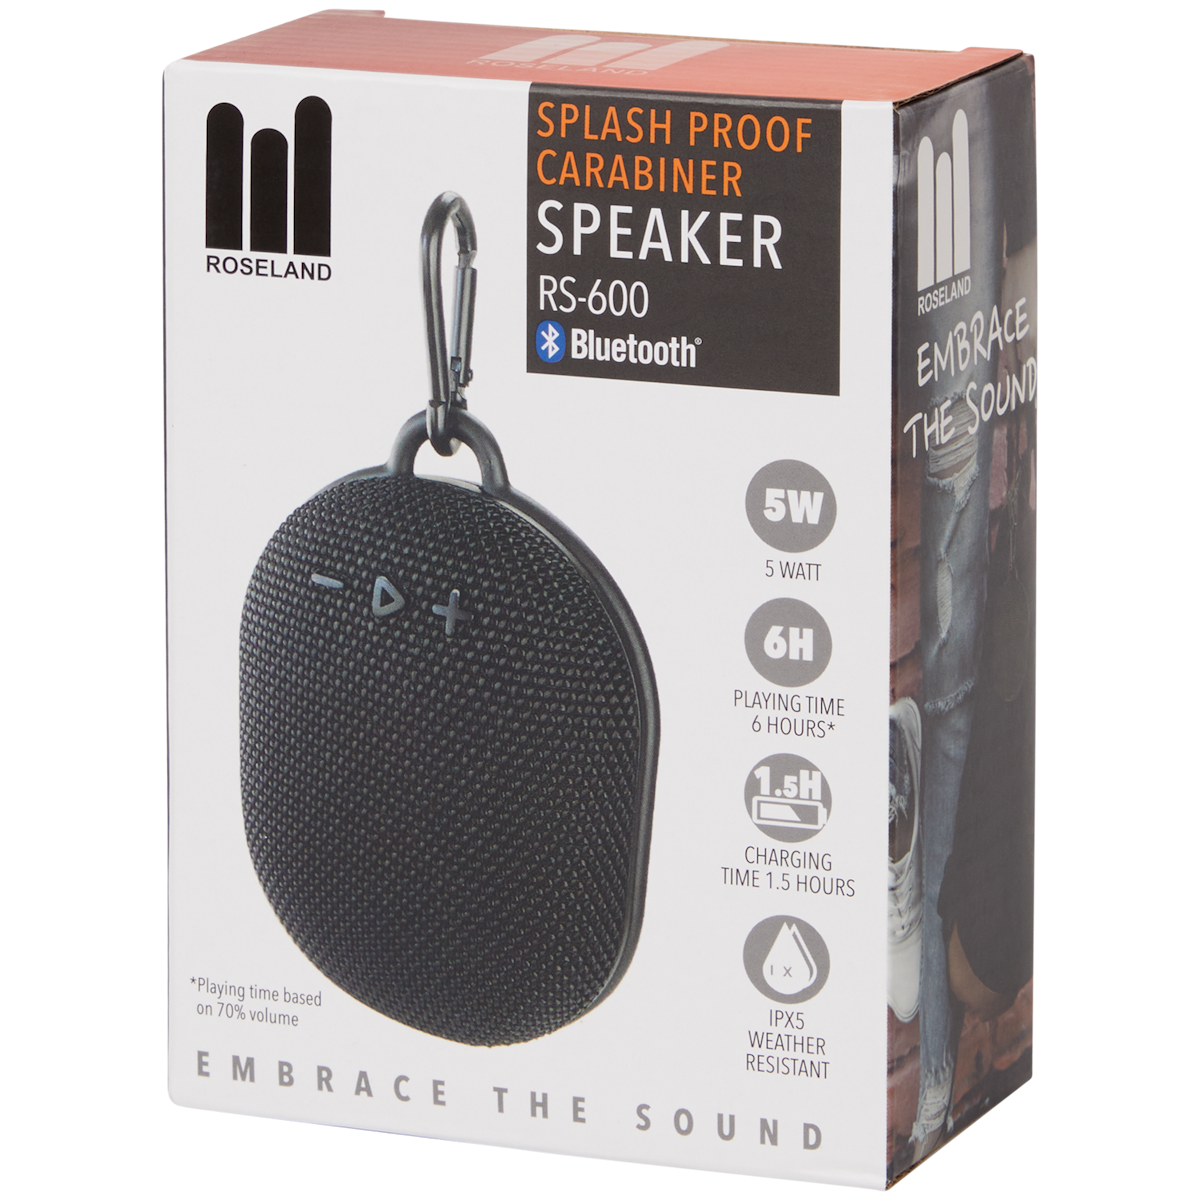 Roseland splashproof speaker